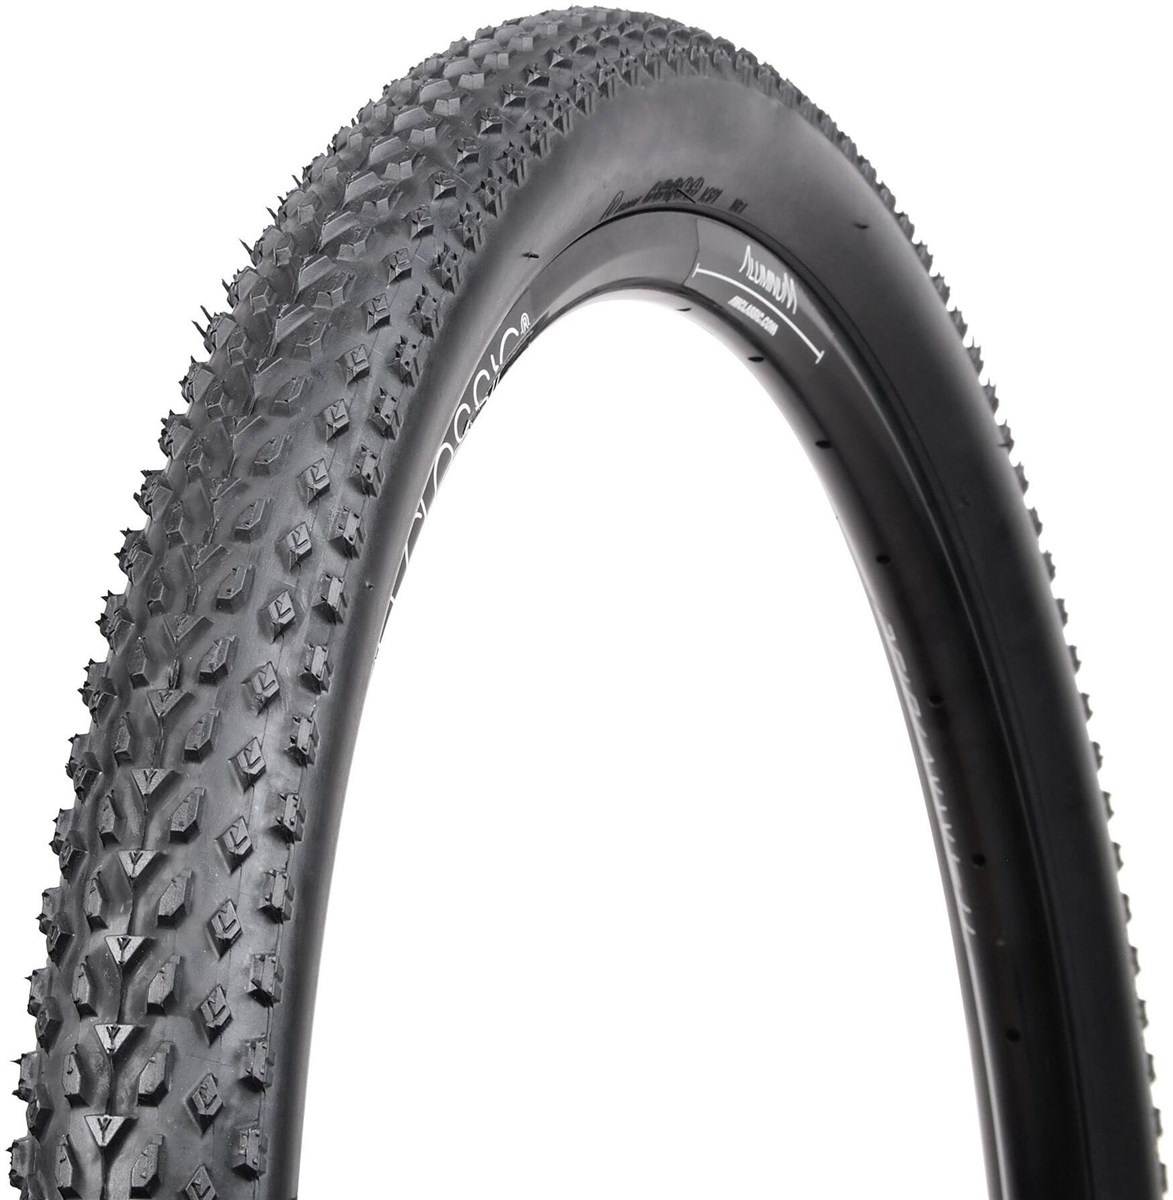 Nutrak Havoc 26" MTB Tyre product image